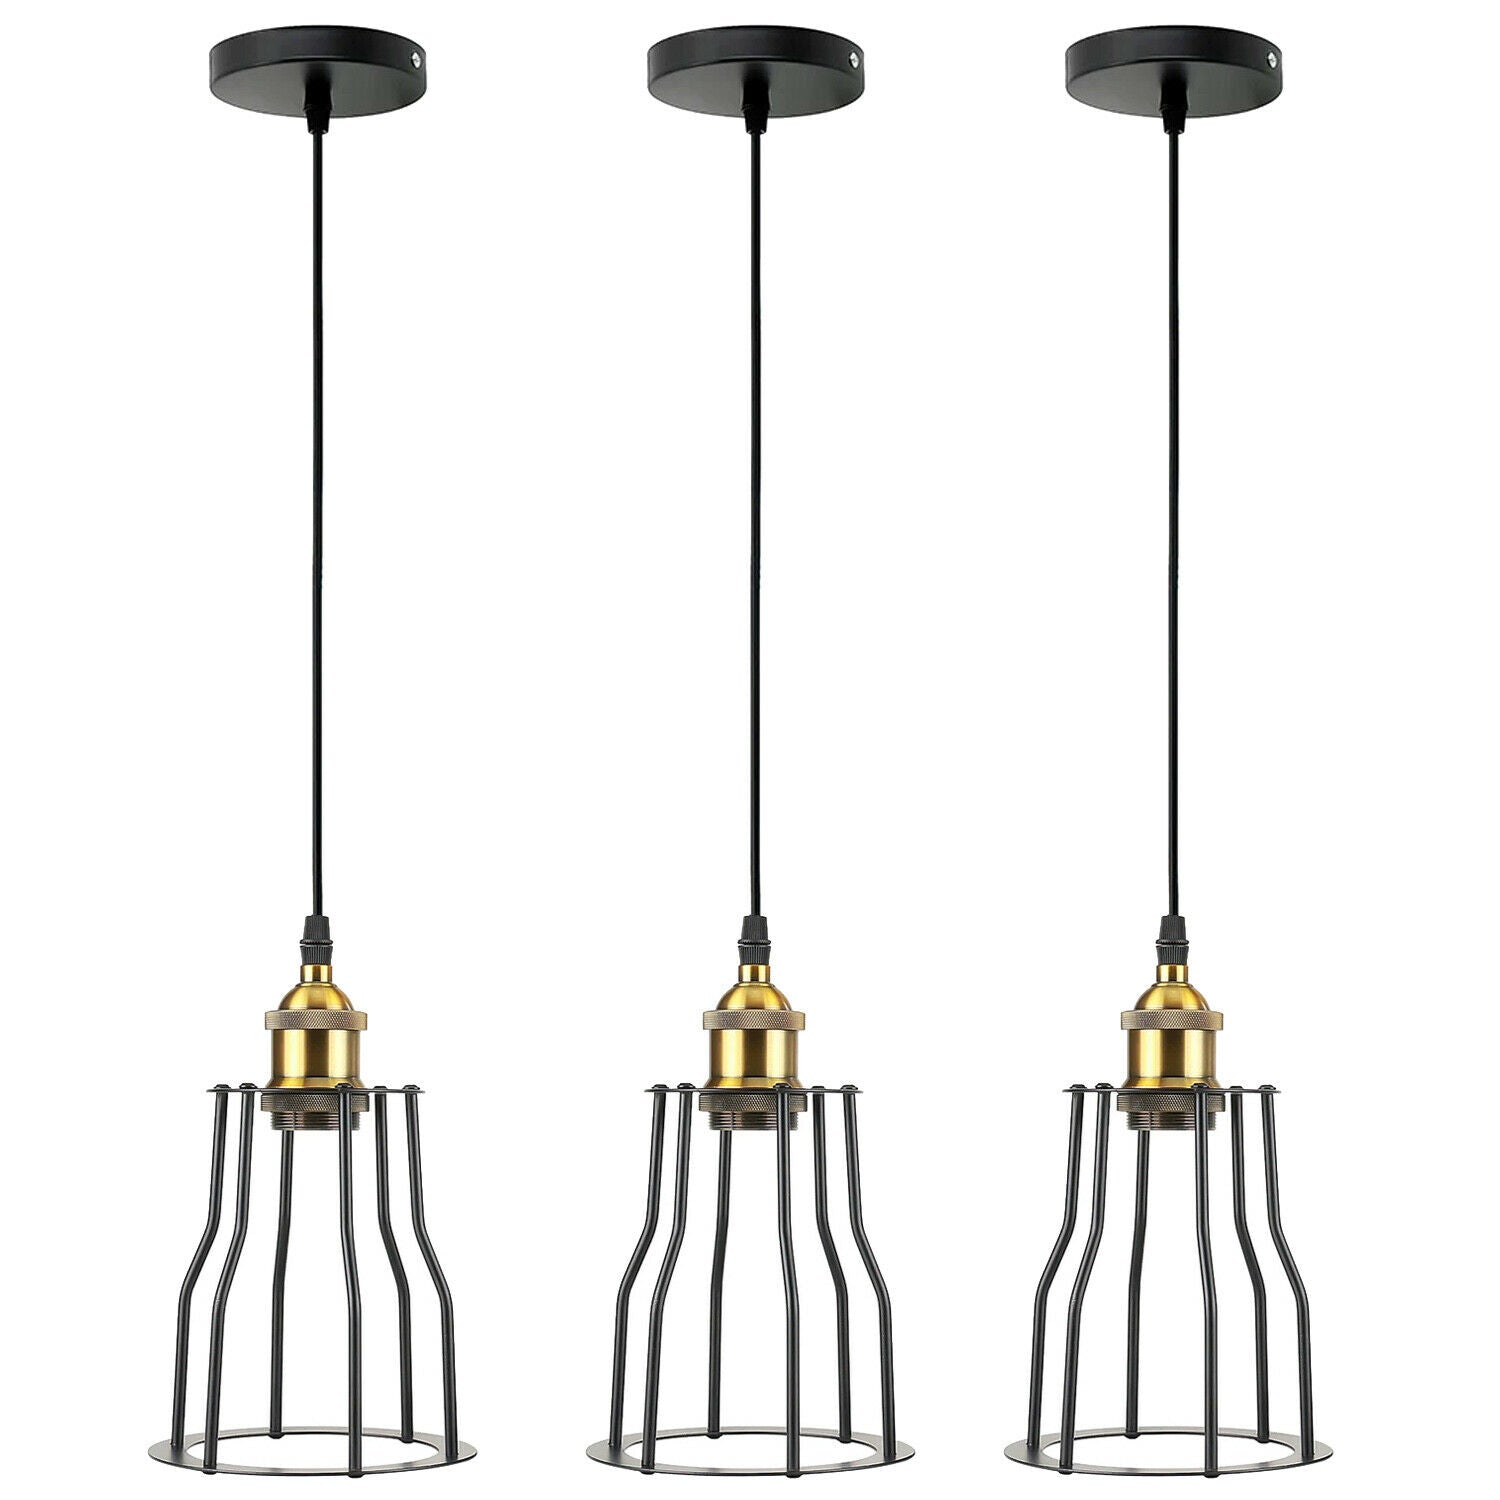 3 Pack Vintage Industrial Modern Retro Loft Cage Ceiling Lamp Cage Pendant Lights~3561 - LEDSone UK Ltd